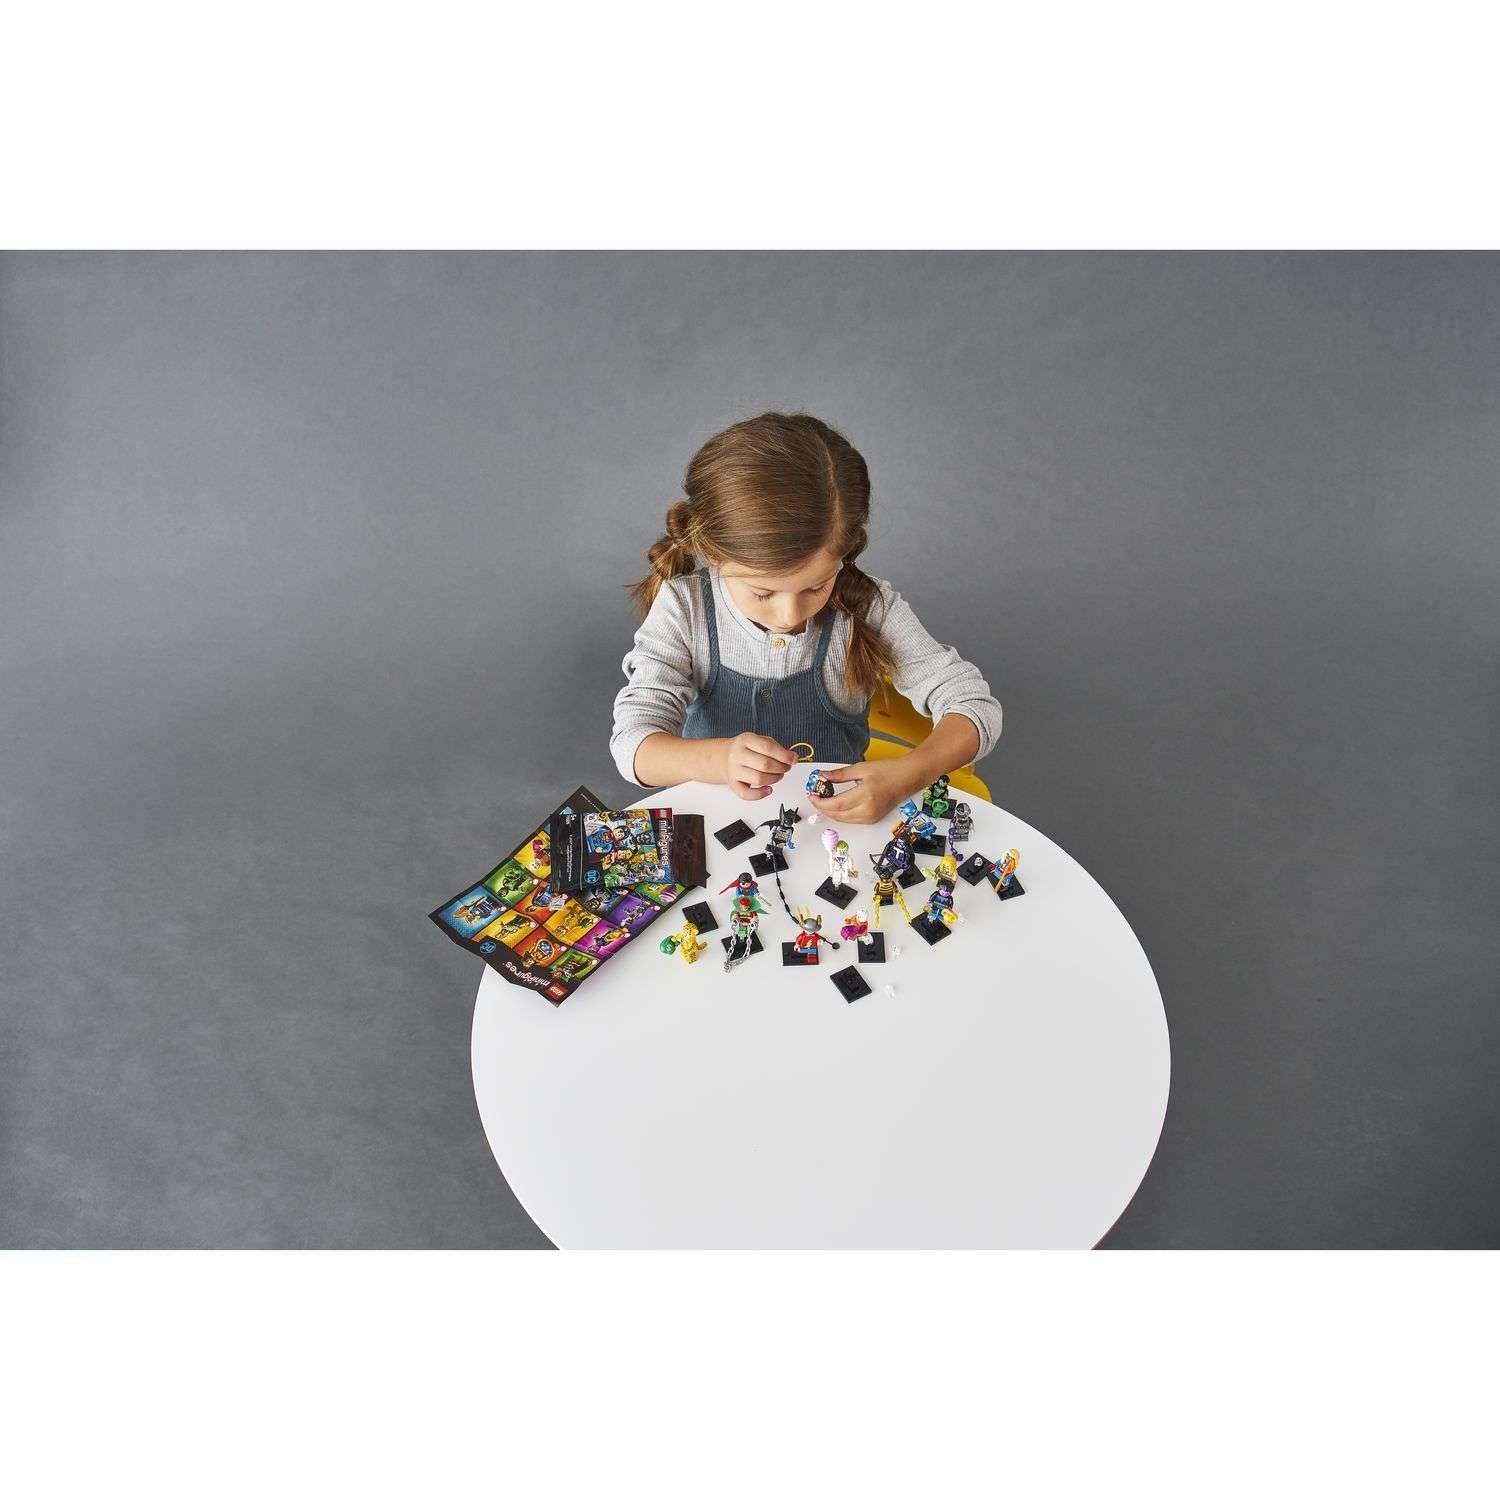 Конструктор LEGO Minifigures DC Super Heroes Series 71026 - фото 12